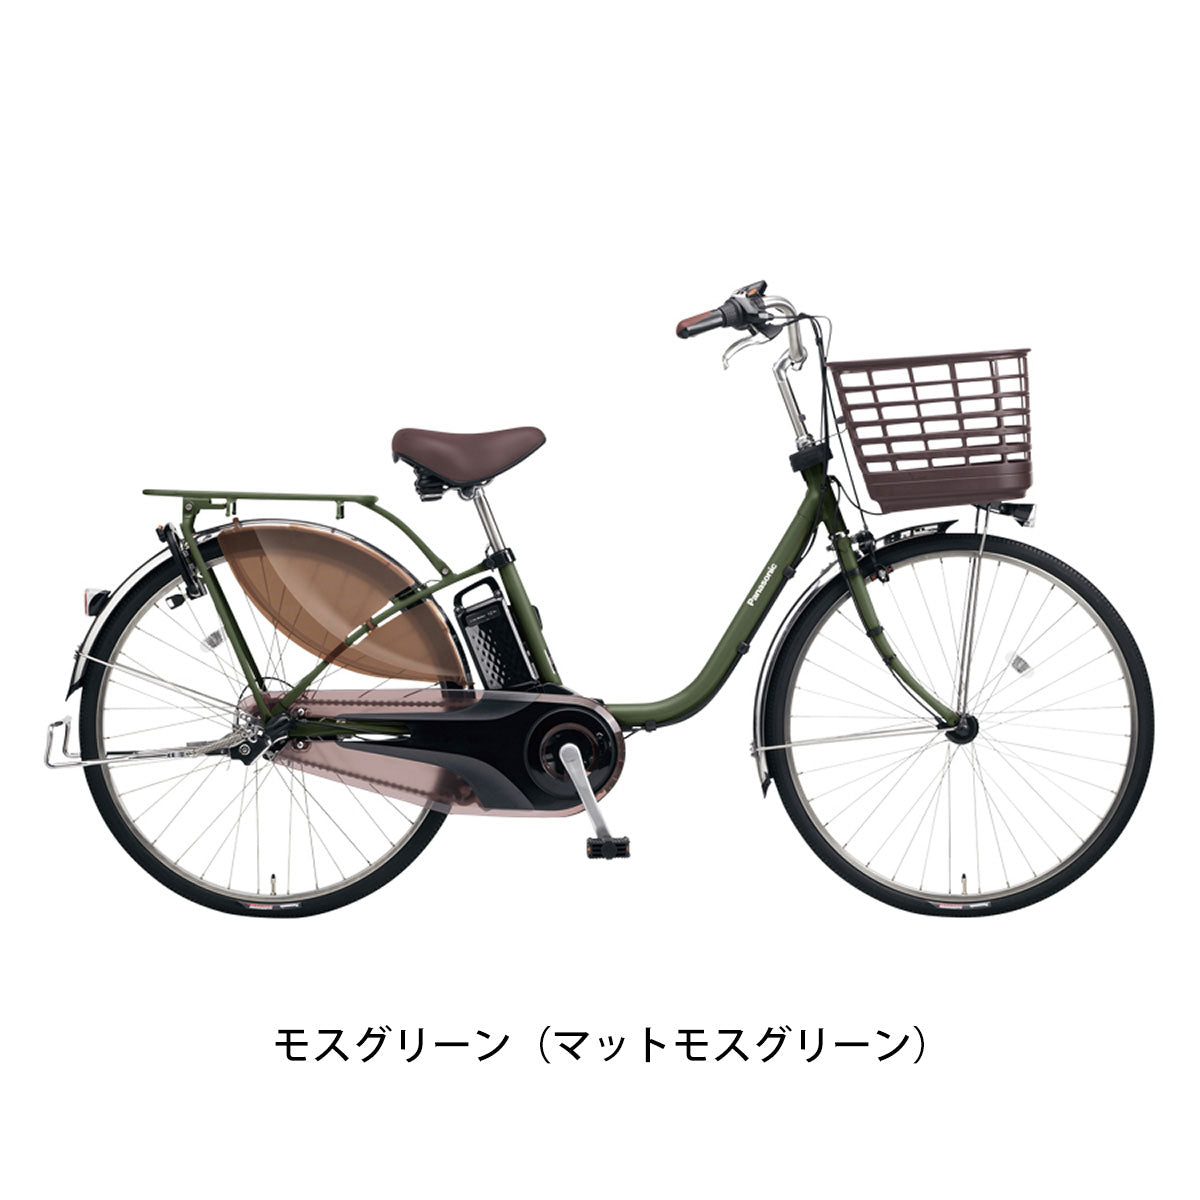 パナソニック 電動自転車 アシスト自転車 Panasonic 3段変速  BE-FM431